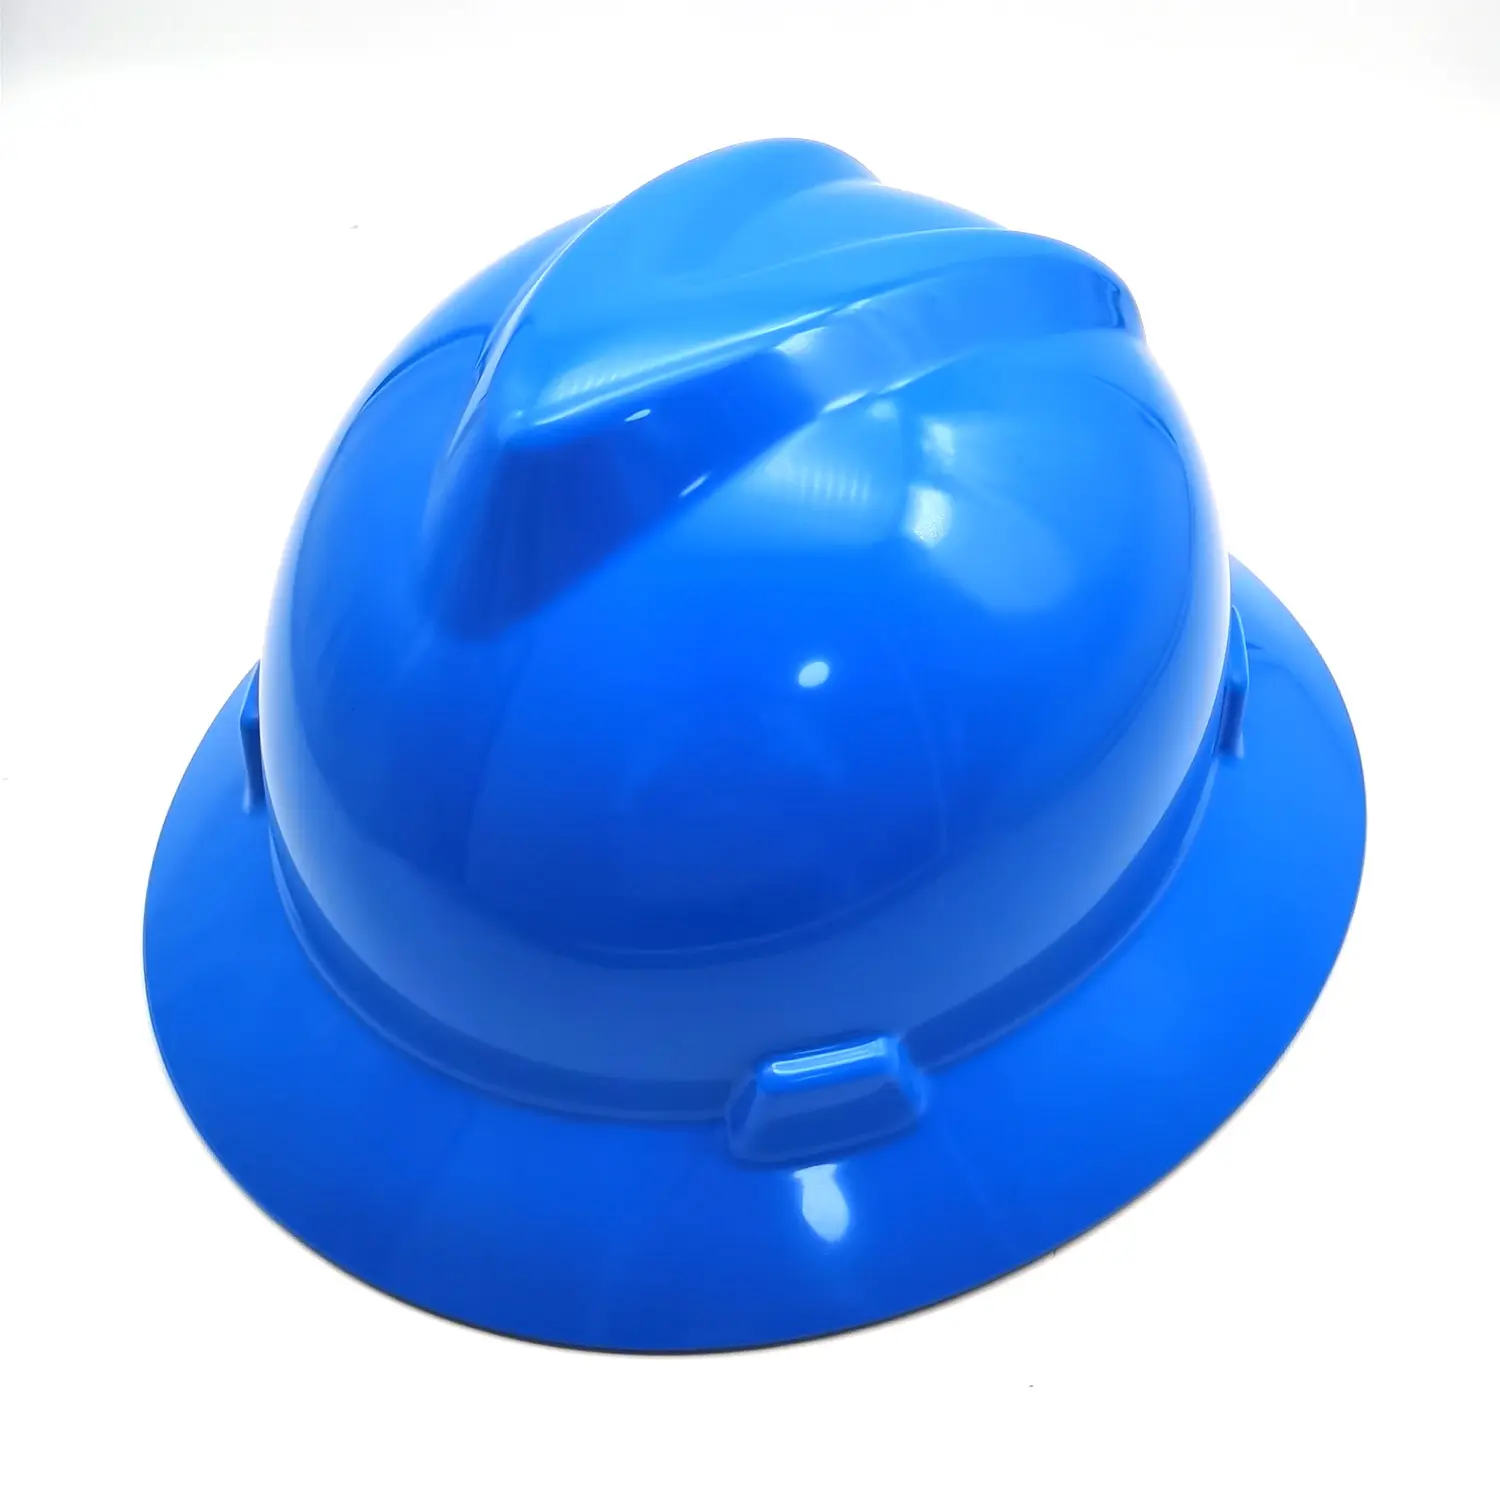 ANSI HDPE reforçado respingo guarda estilos peso leve construção capacetes mineiro industrial segurança capacete